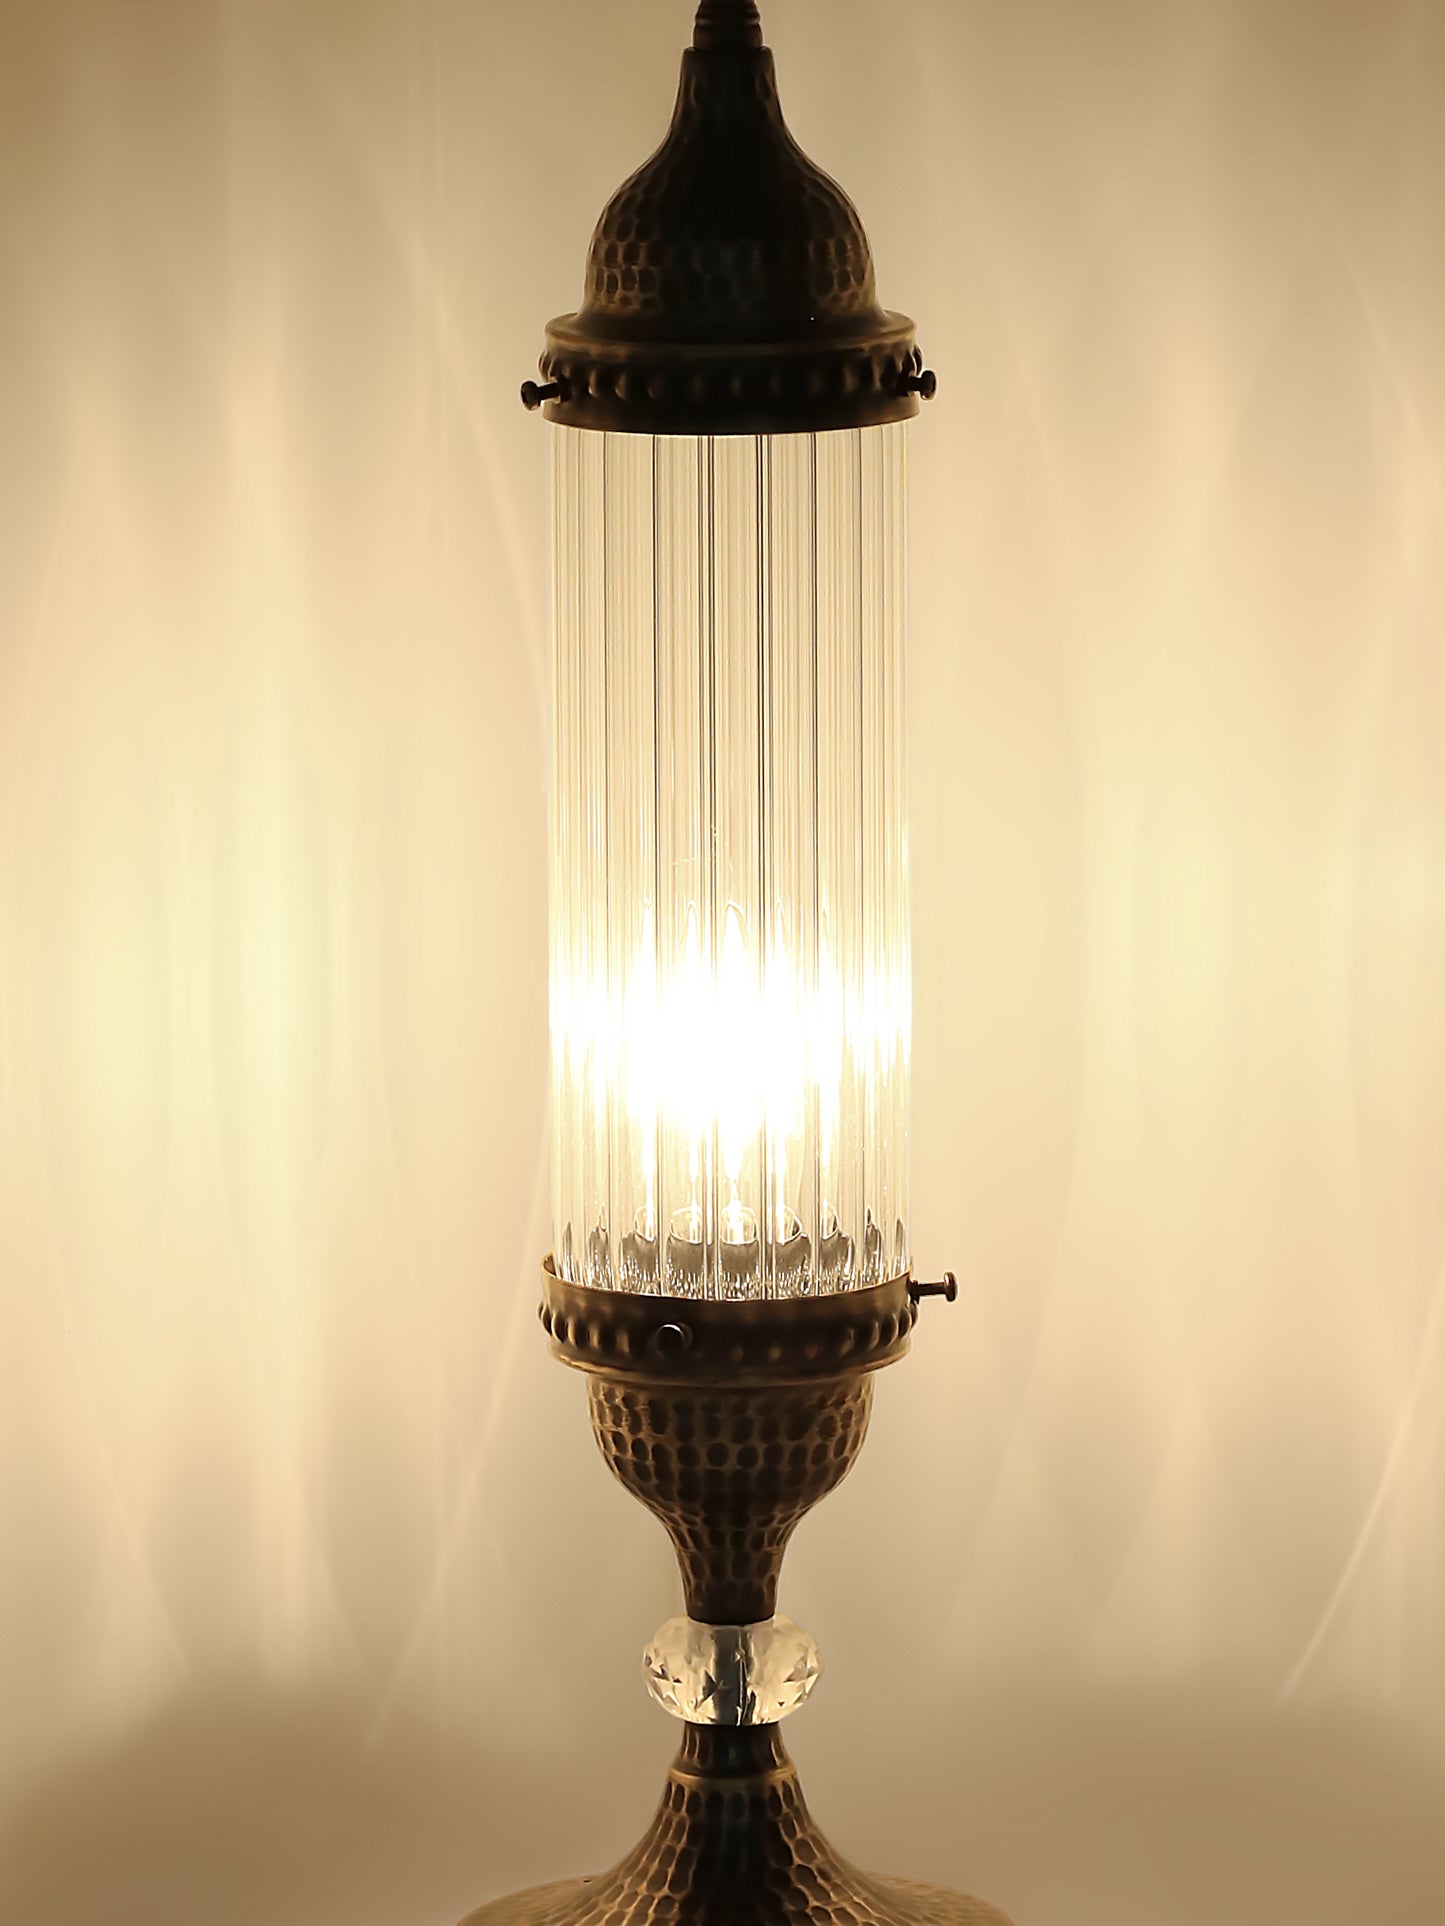 Turkish Design Pyrex Blown Glass Bedside Lamp